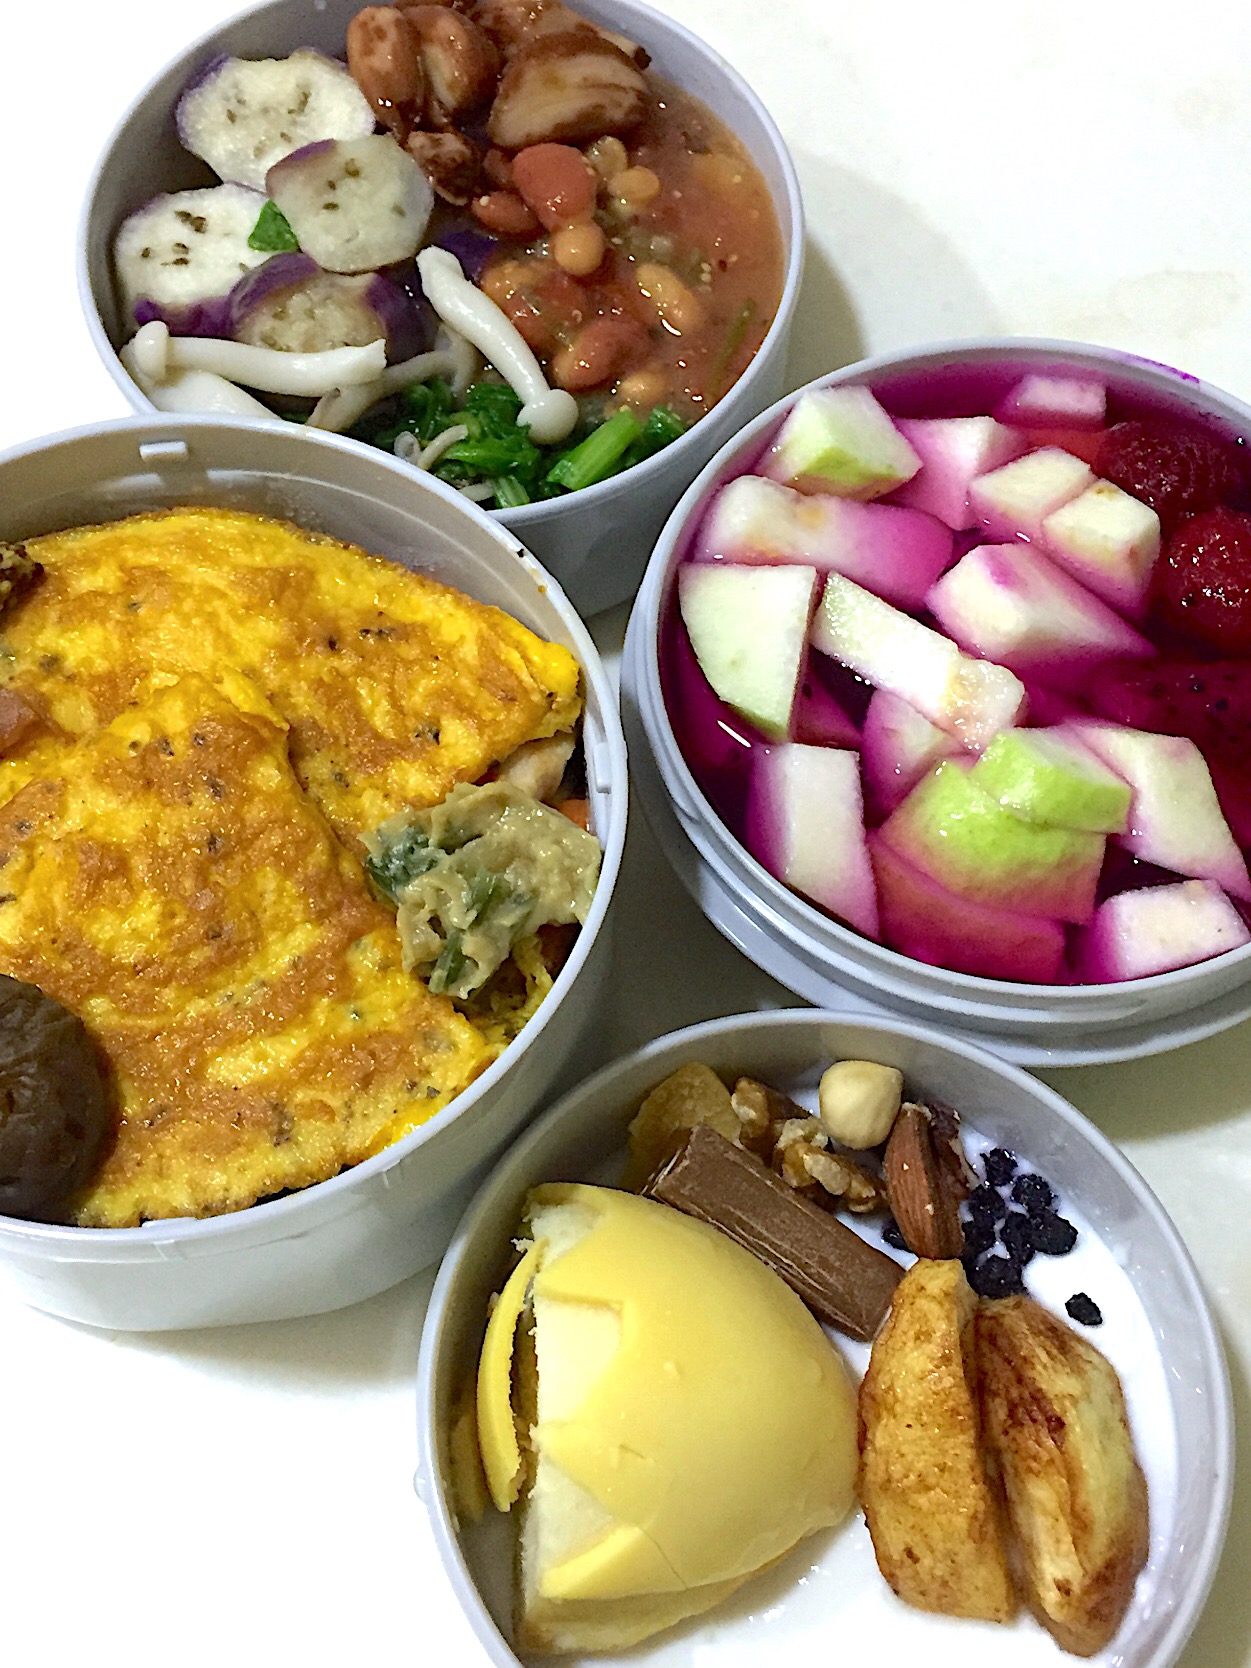 #lunchbox  #autumn  #fruitsalad  #omlette  #beans  #egg  #eggplant  #yougurt  #desert